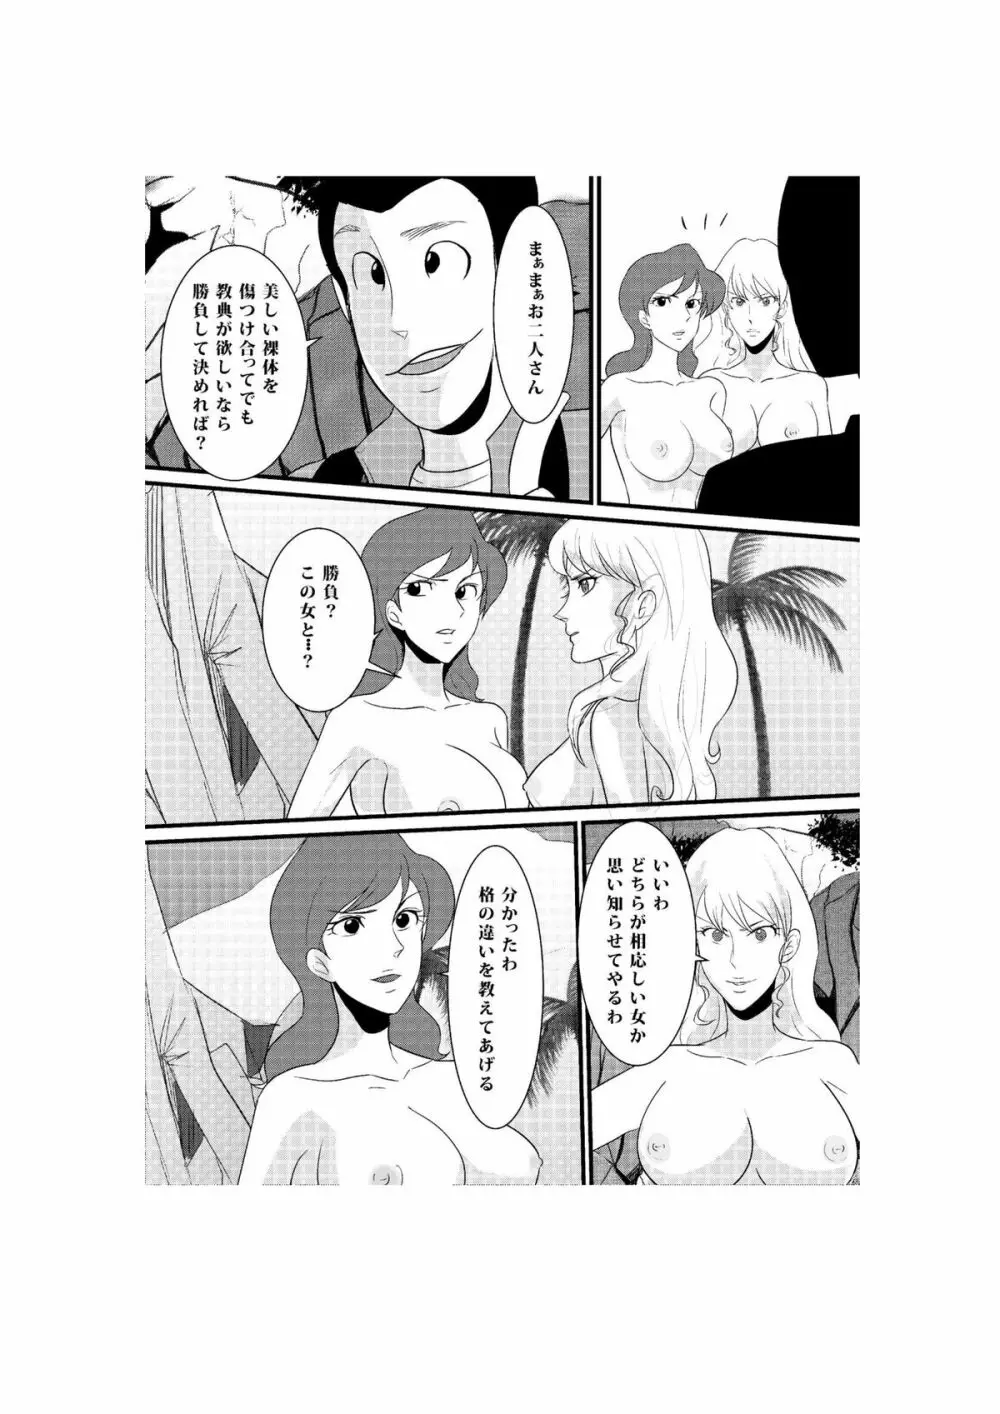 Fushi no Kyouten Ureta Onna no Tatakai - Fujiko VS Emmanuelle - page3